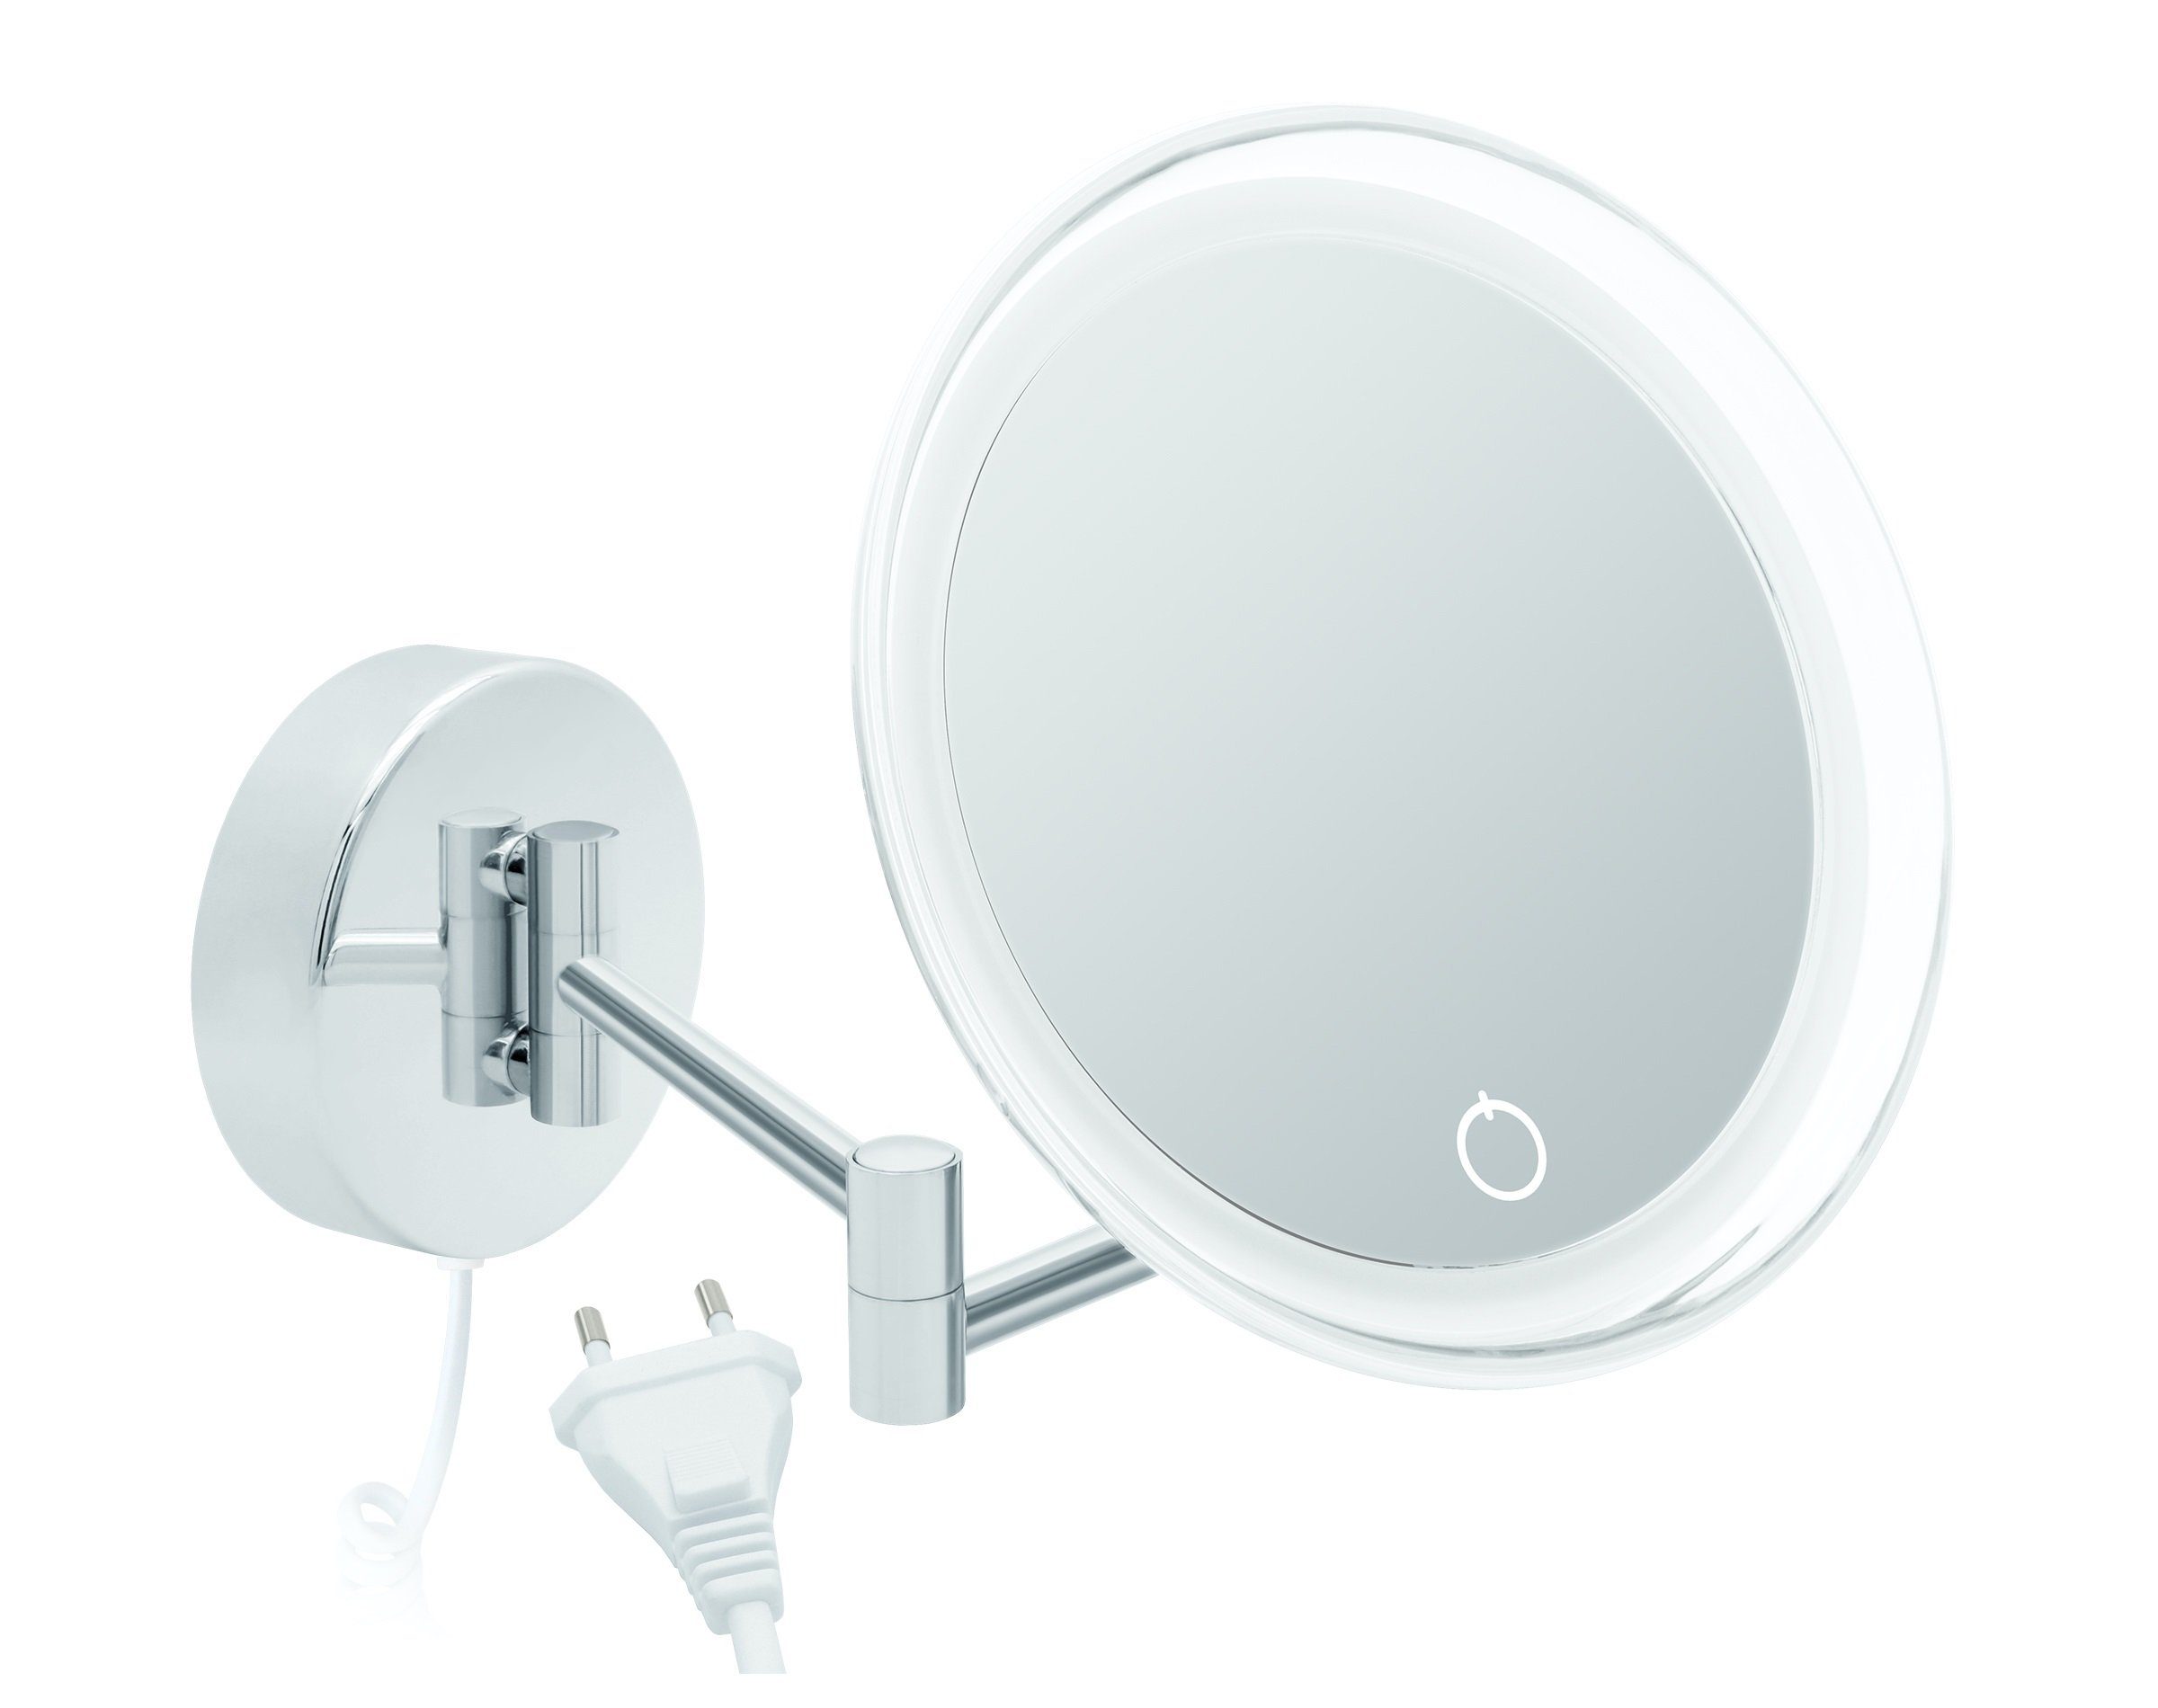 Kosmetikspiegel mit 7fach weißem Kabel Kosmetikspiegel LED Dimmerfunktion Auto-off Siena, Libaro